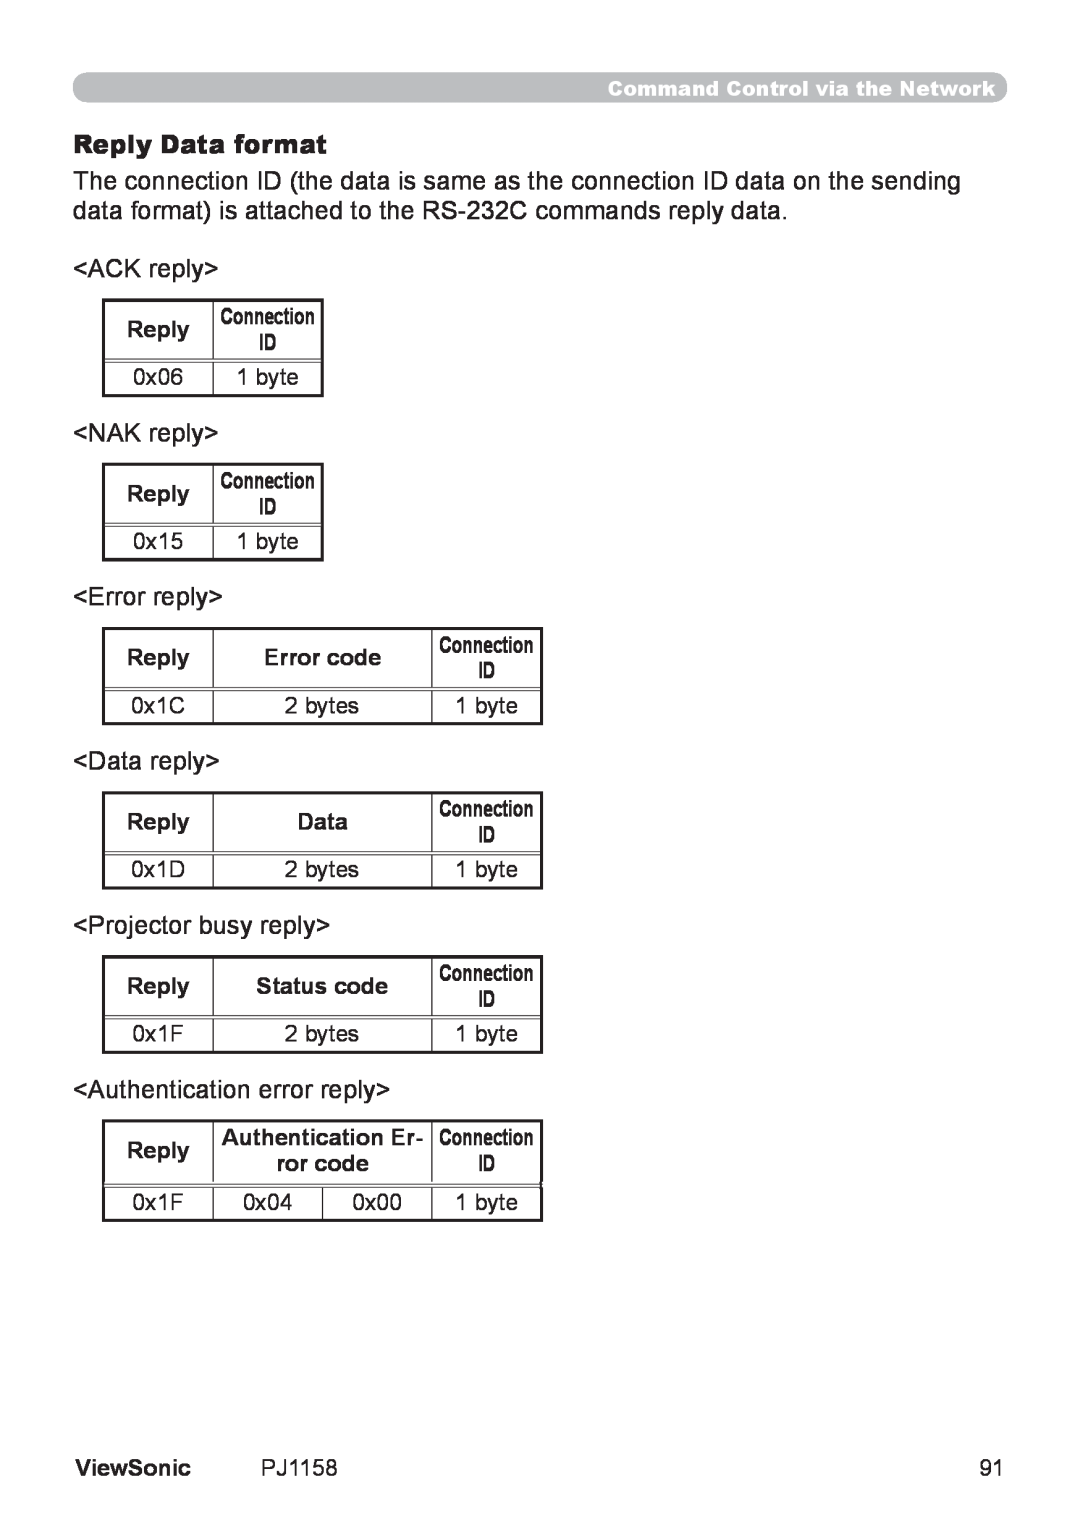 ViewSonic PJ1158 manual Reply Data format 